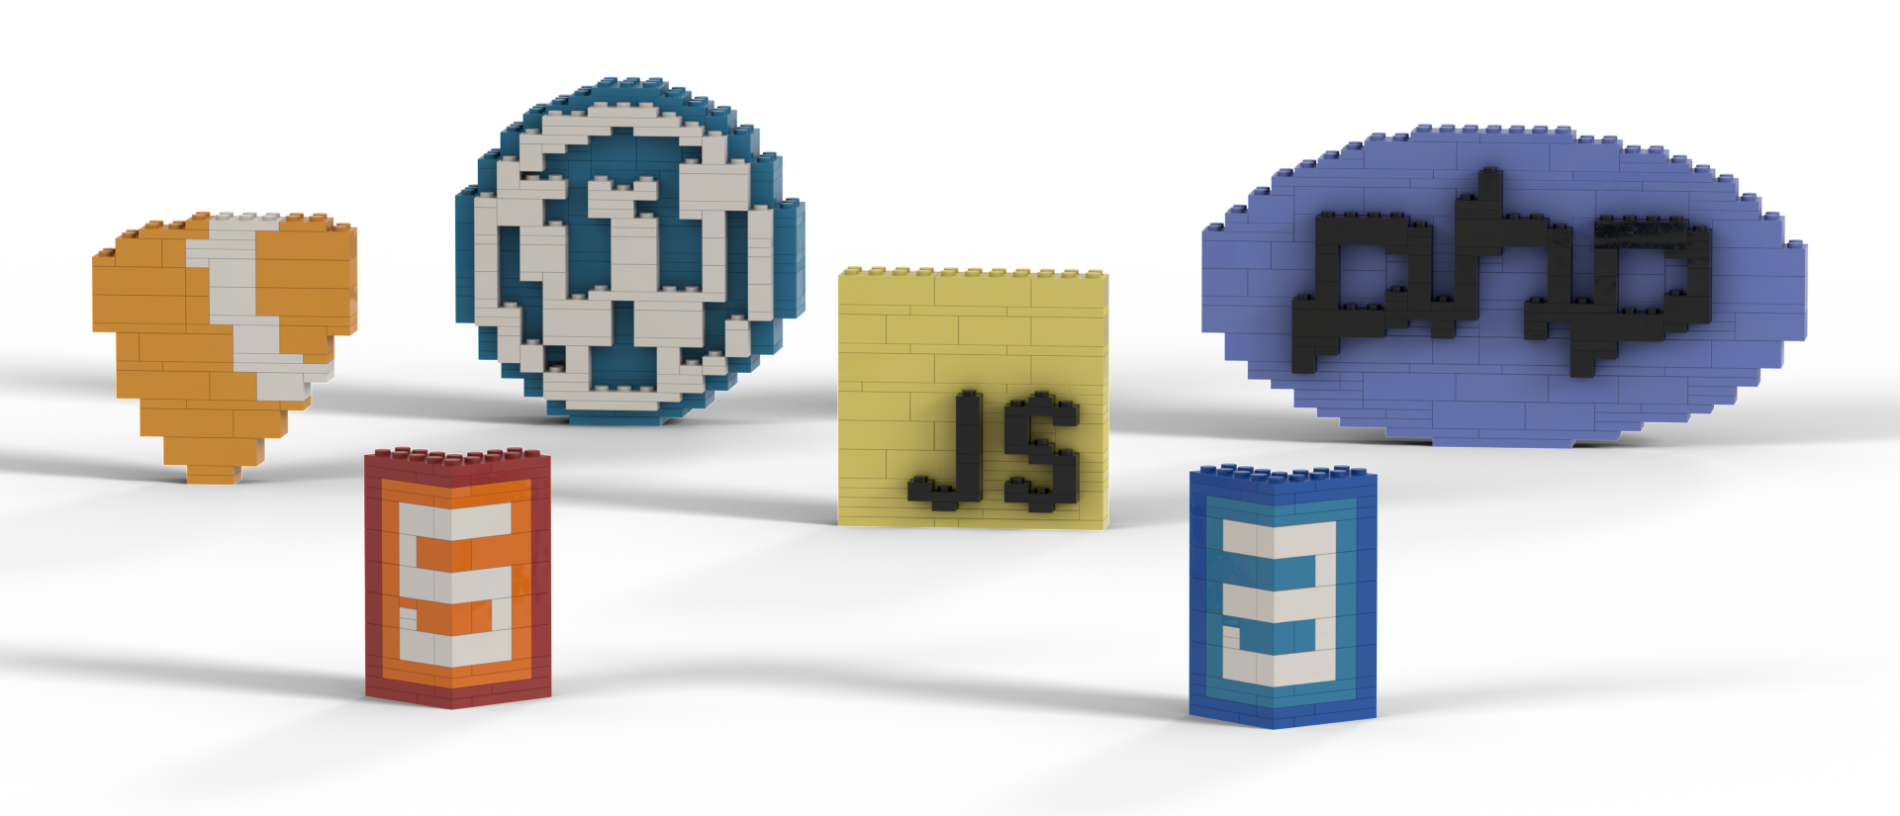 Die Logos von Typo3, PHP, JavaScript, WordPress, HTML5 und CSS3 in Lego nachgebaut